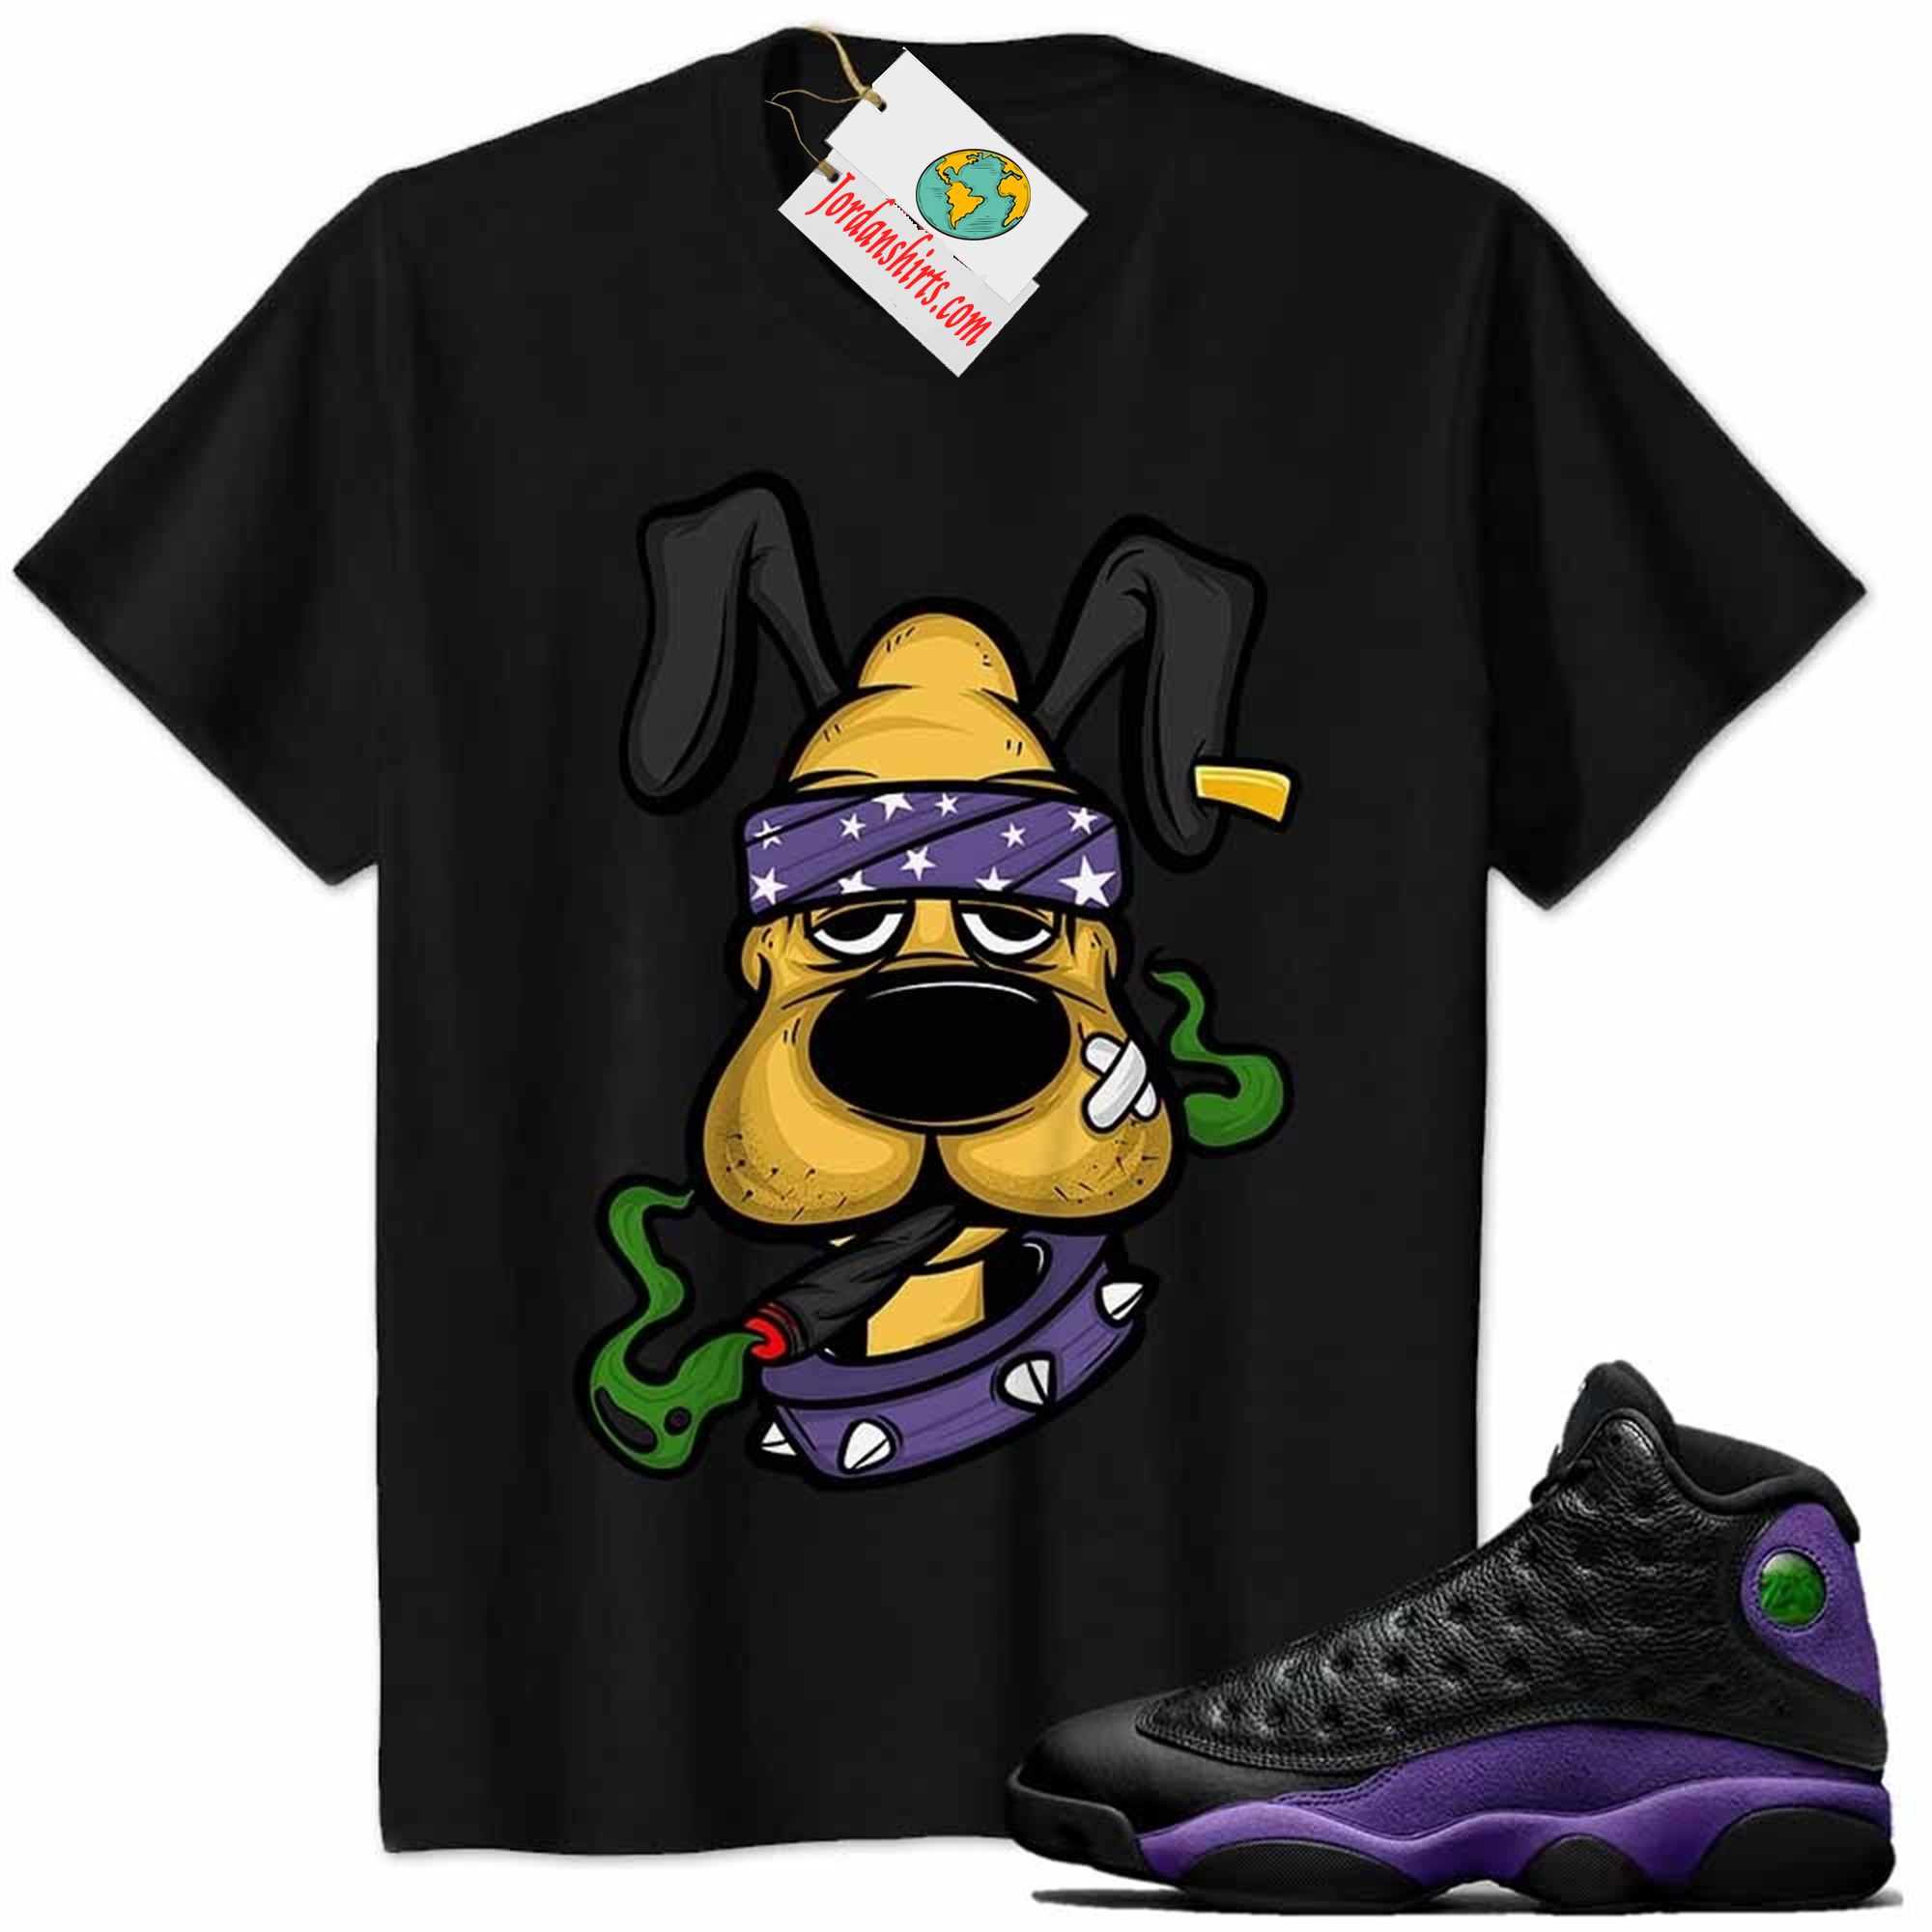 Jordan 13 Shirt, Gangster Pluto Smoke Weed Black Air Jordan 13 Court Purple 13s Plus Size Up To 5xl